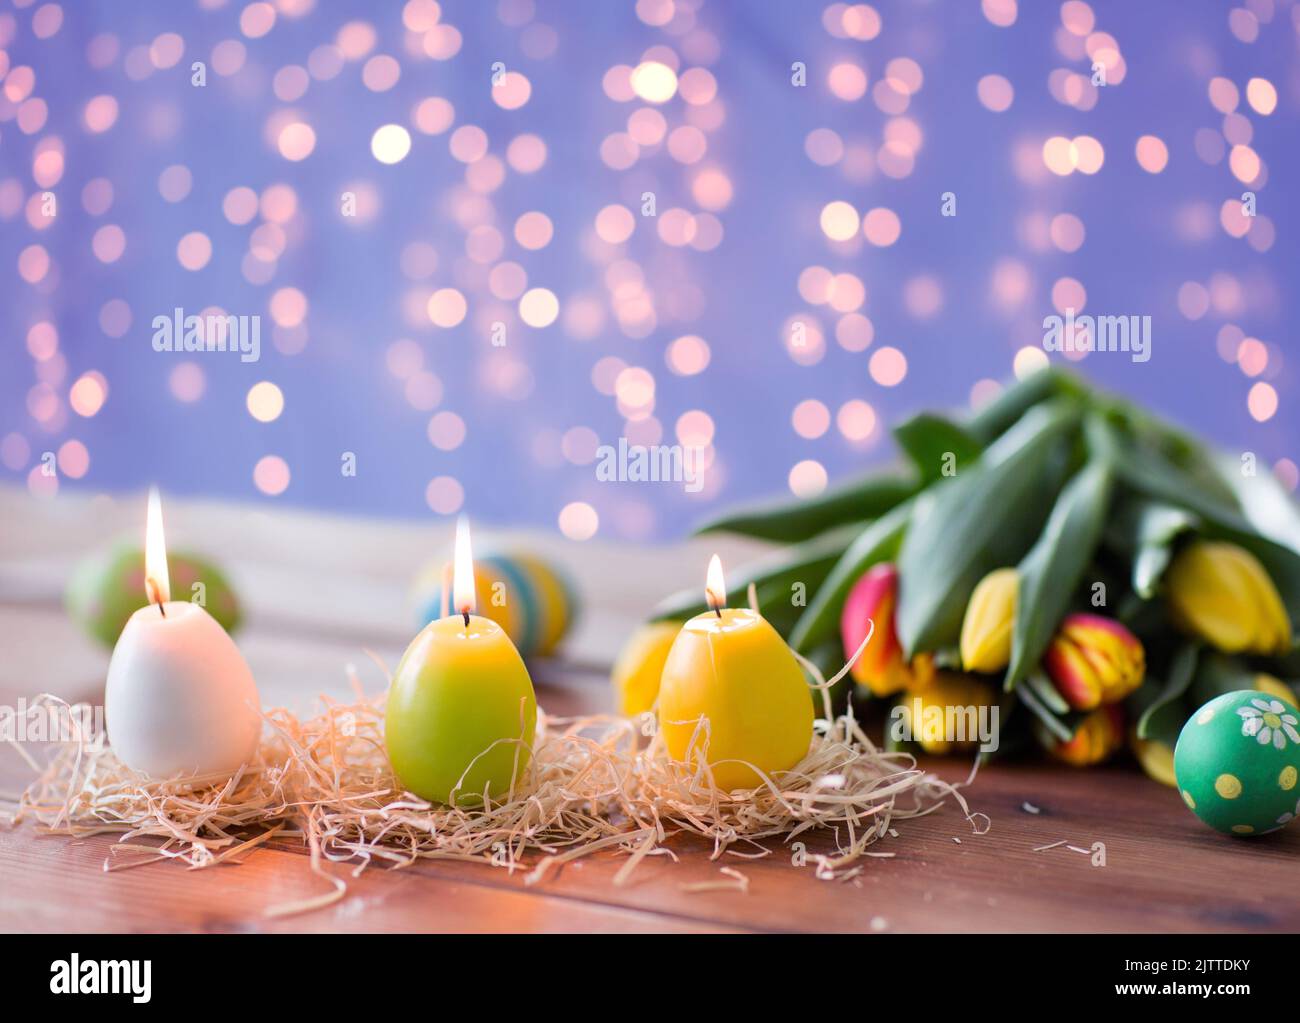 Nid d'oiseau œuf coloré - Évènement, Pâques & Ramadan - La maison